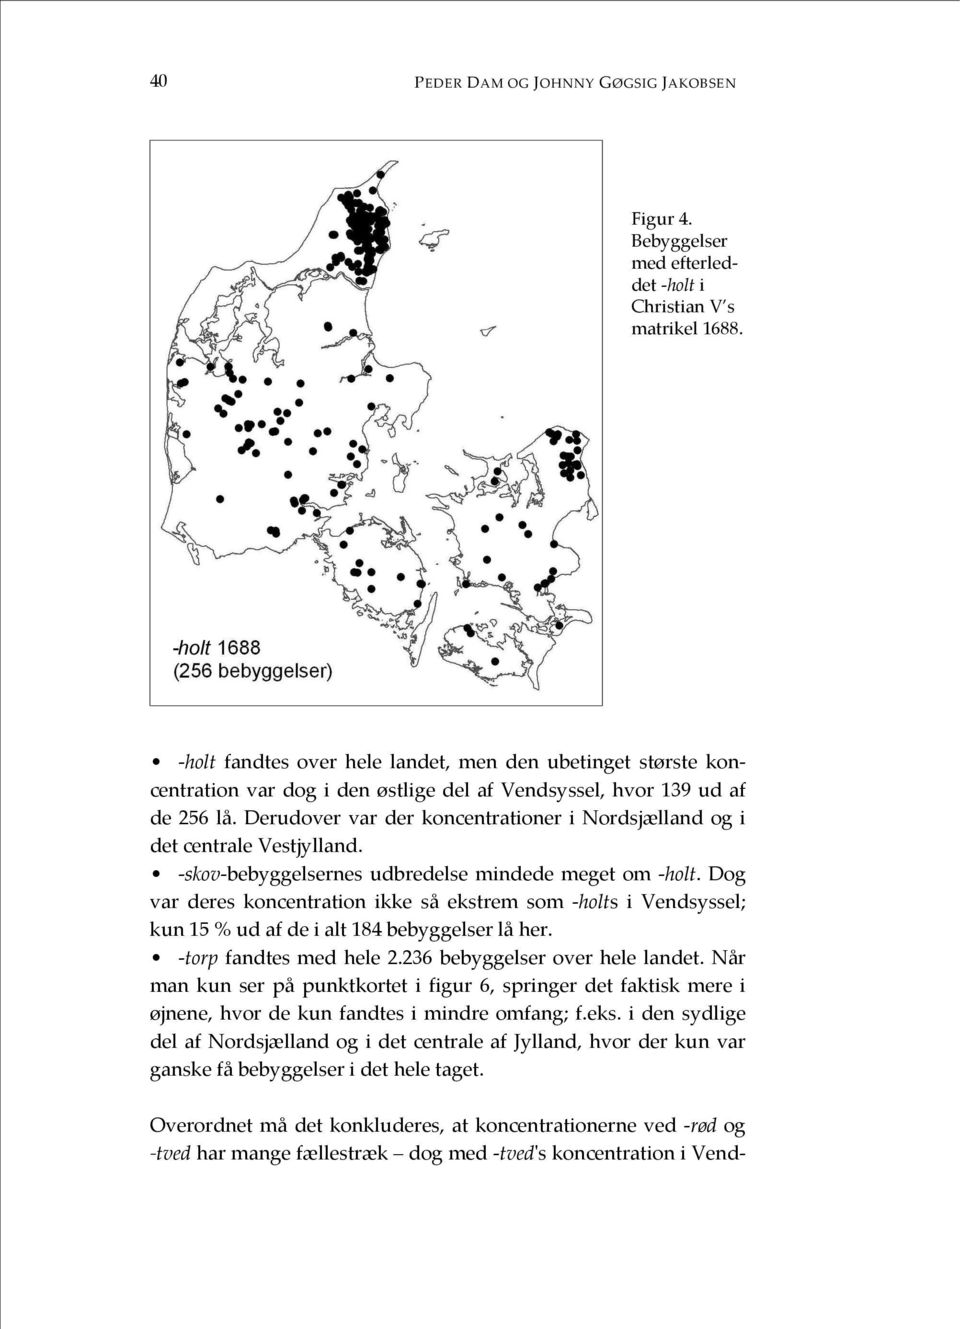 Derudover var der koncentrationer i Nordsjælland og i det centrale Vestjylland. -skov-bebyggelsernes udbredelse mindede meget om -holt.